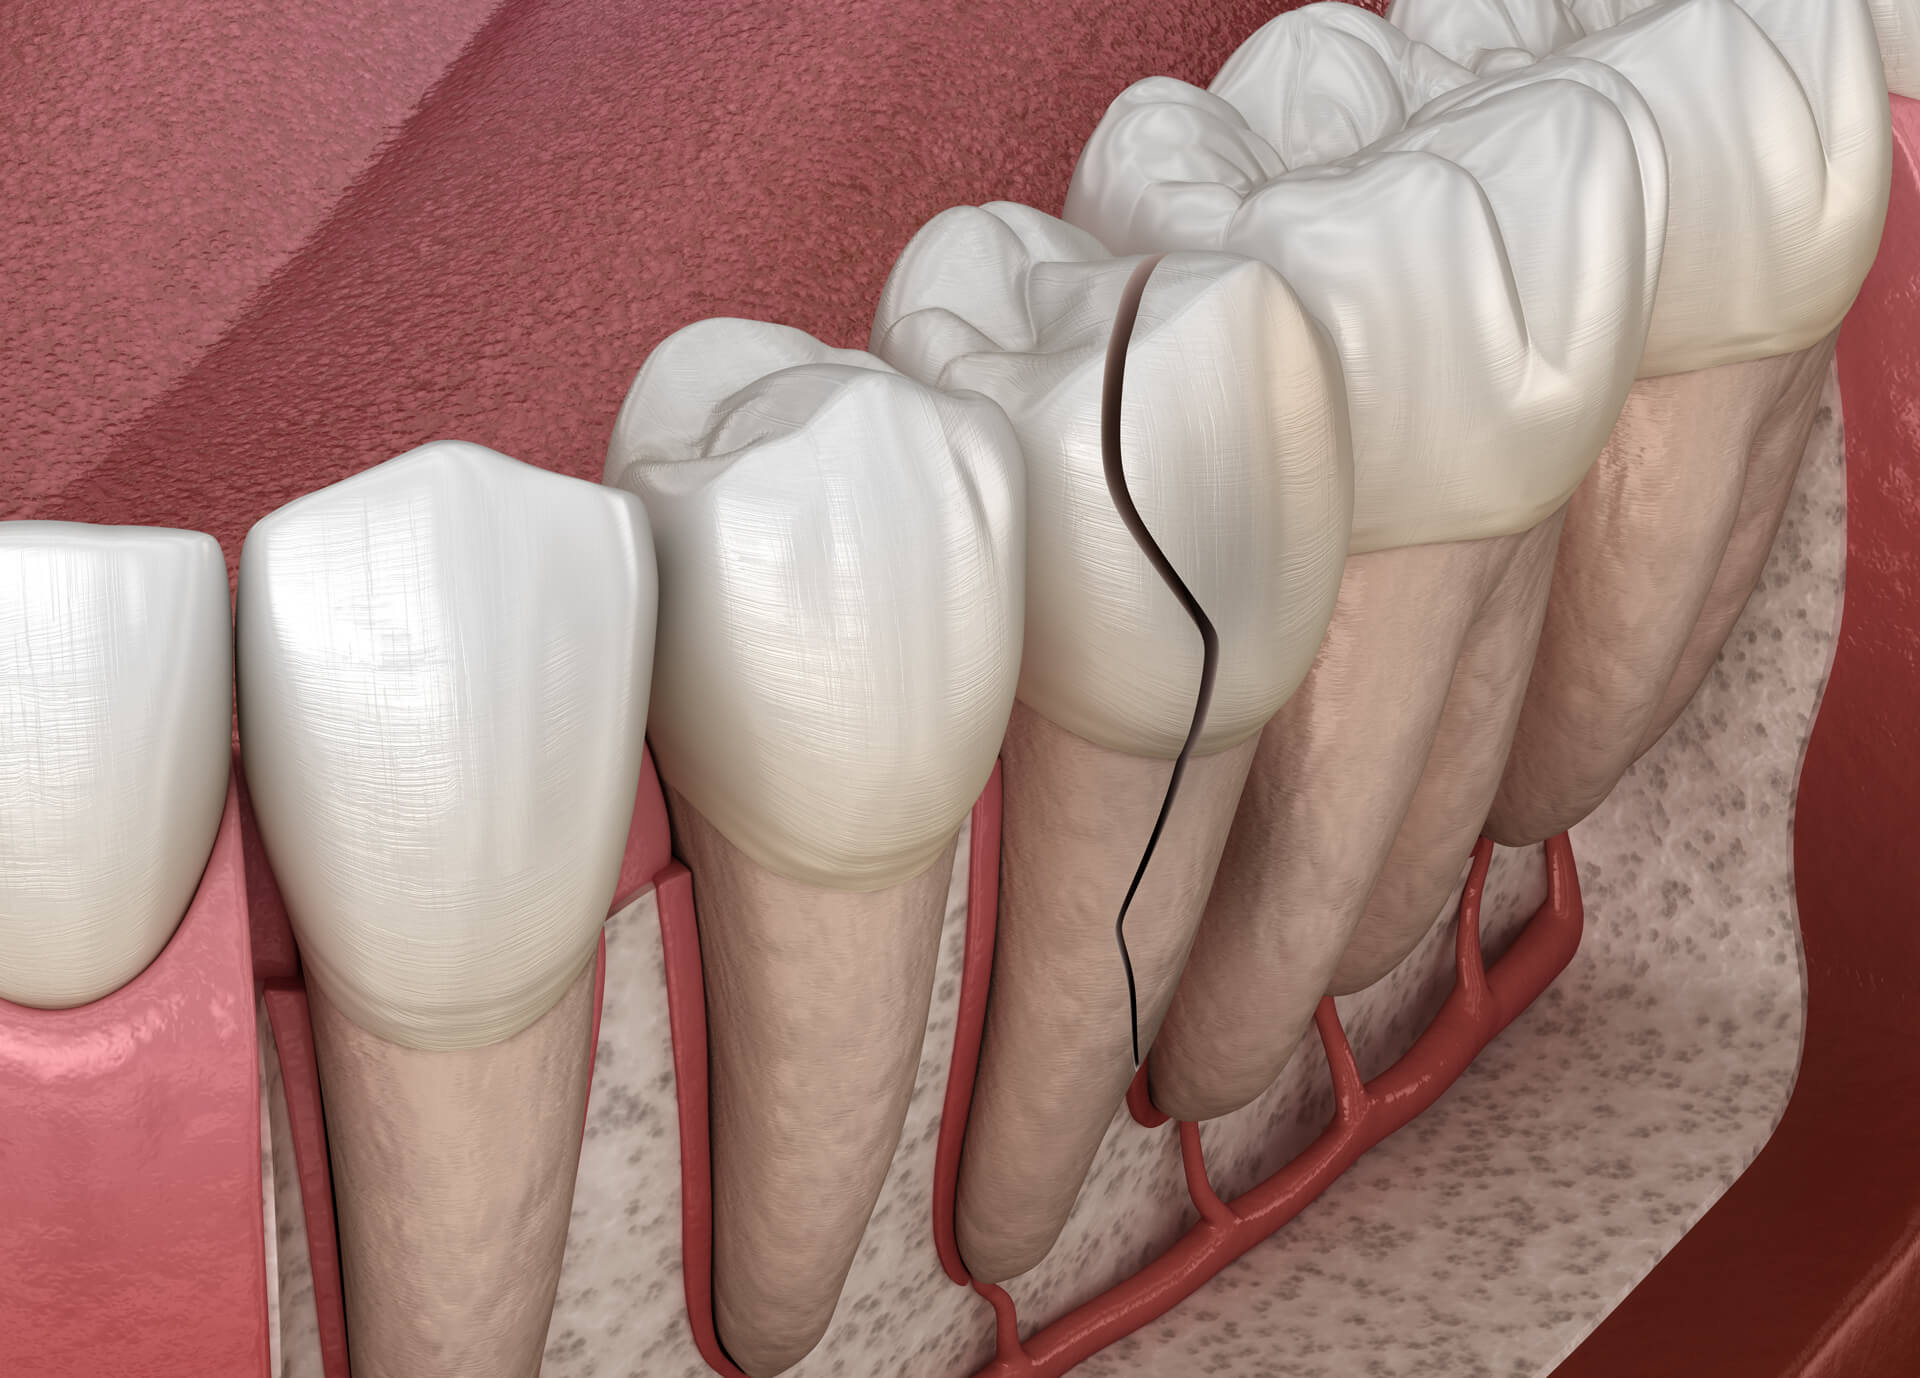 Cracked Tooth Repair: Dental Bonding - Cosmetic & General Dentist in  Colorado Springs